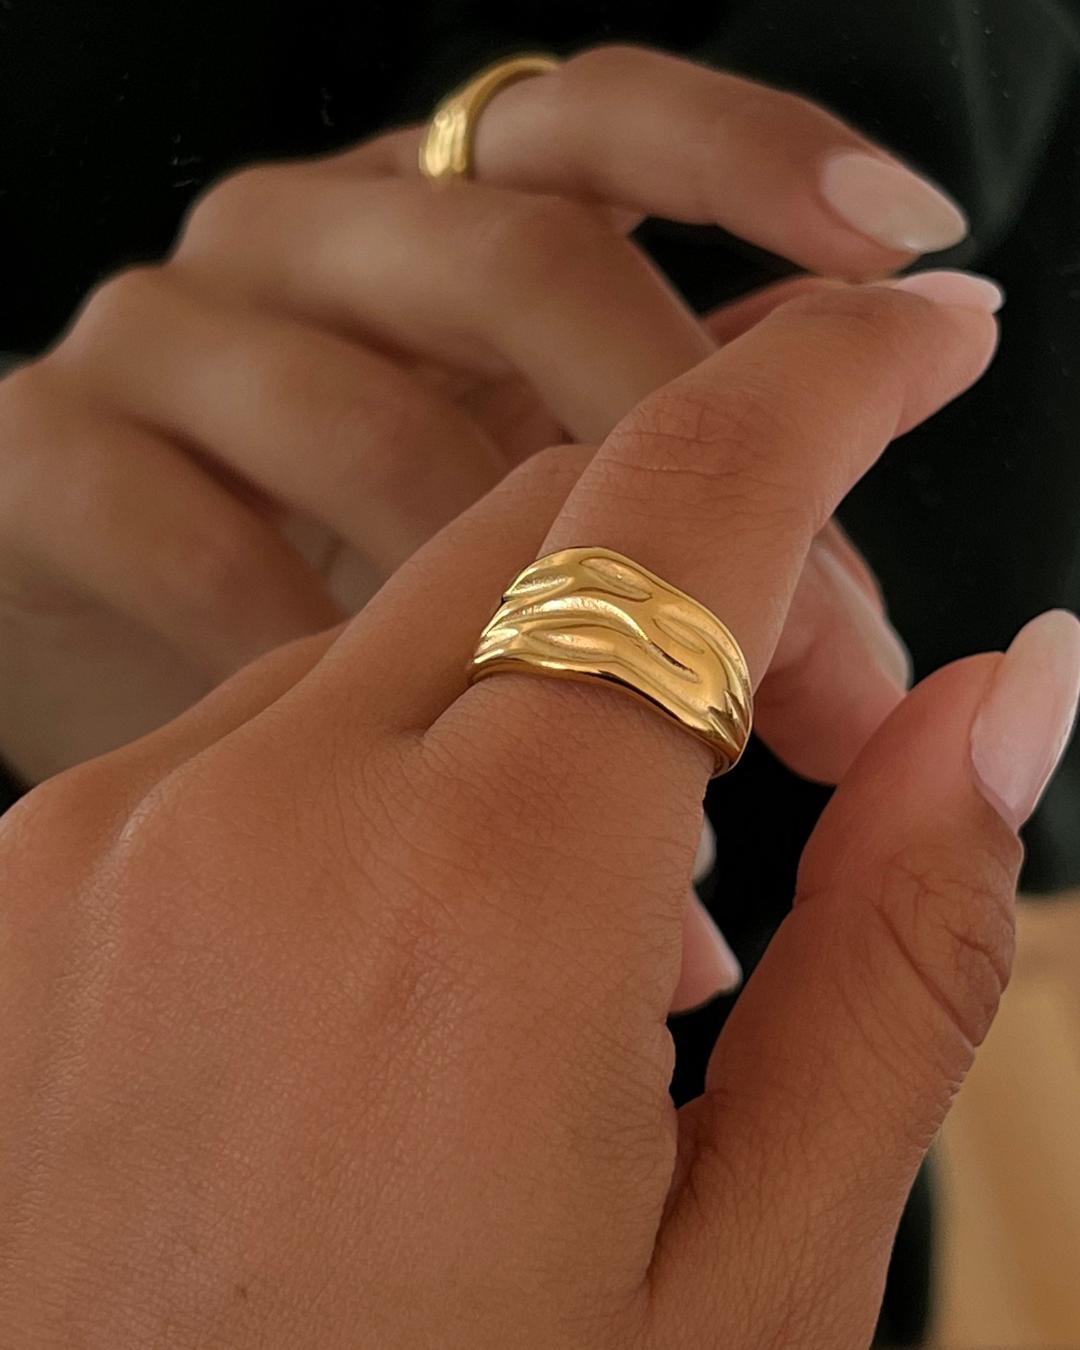 The Elodie Stone Ring – Danielle Jonas